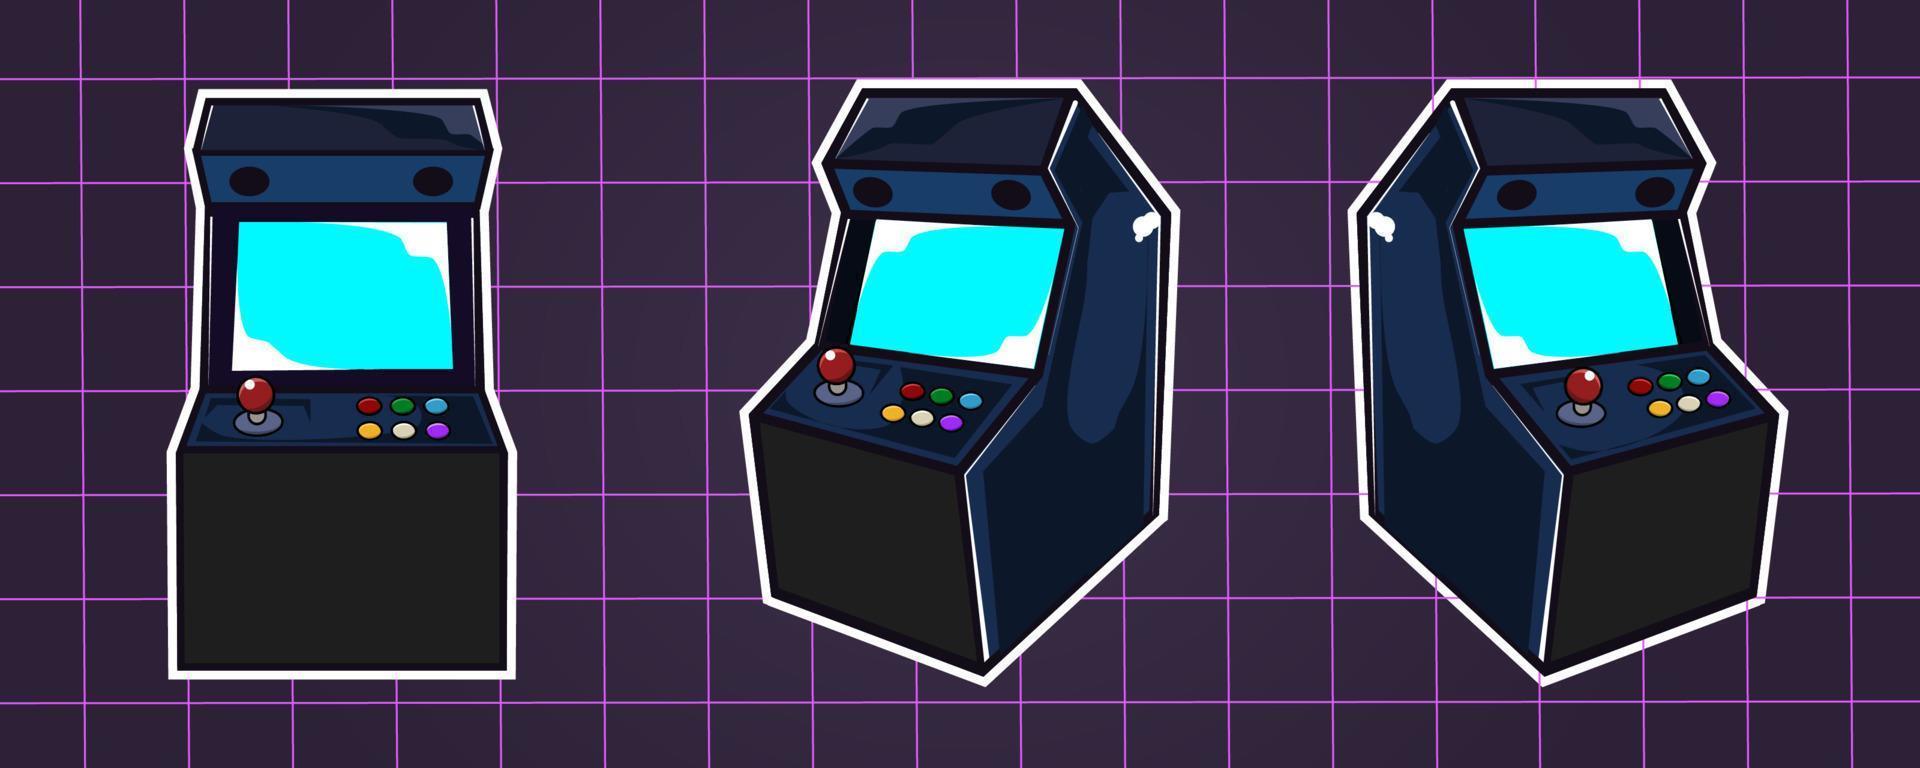 conjunto de máquinas de videogame arcade em estilo cartoon, gráficos vetoriais com vibrações vintage retrô dos anos 80 vetor